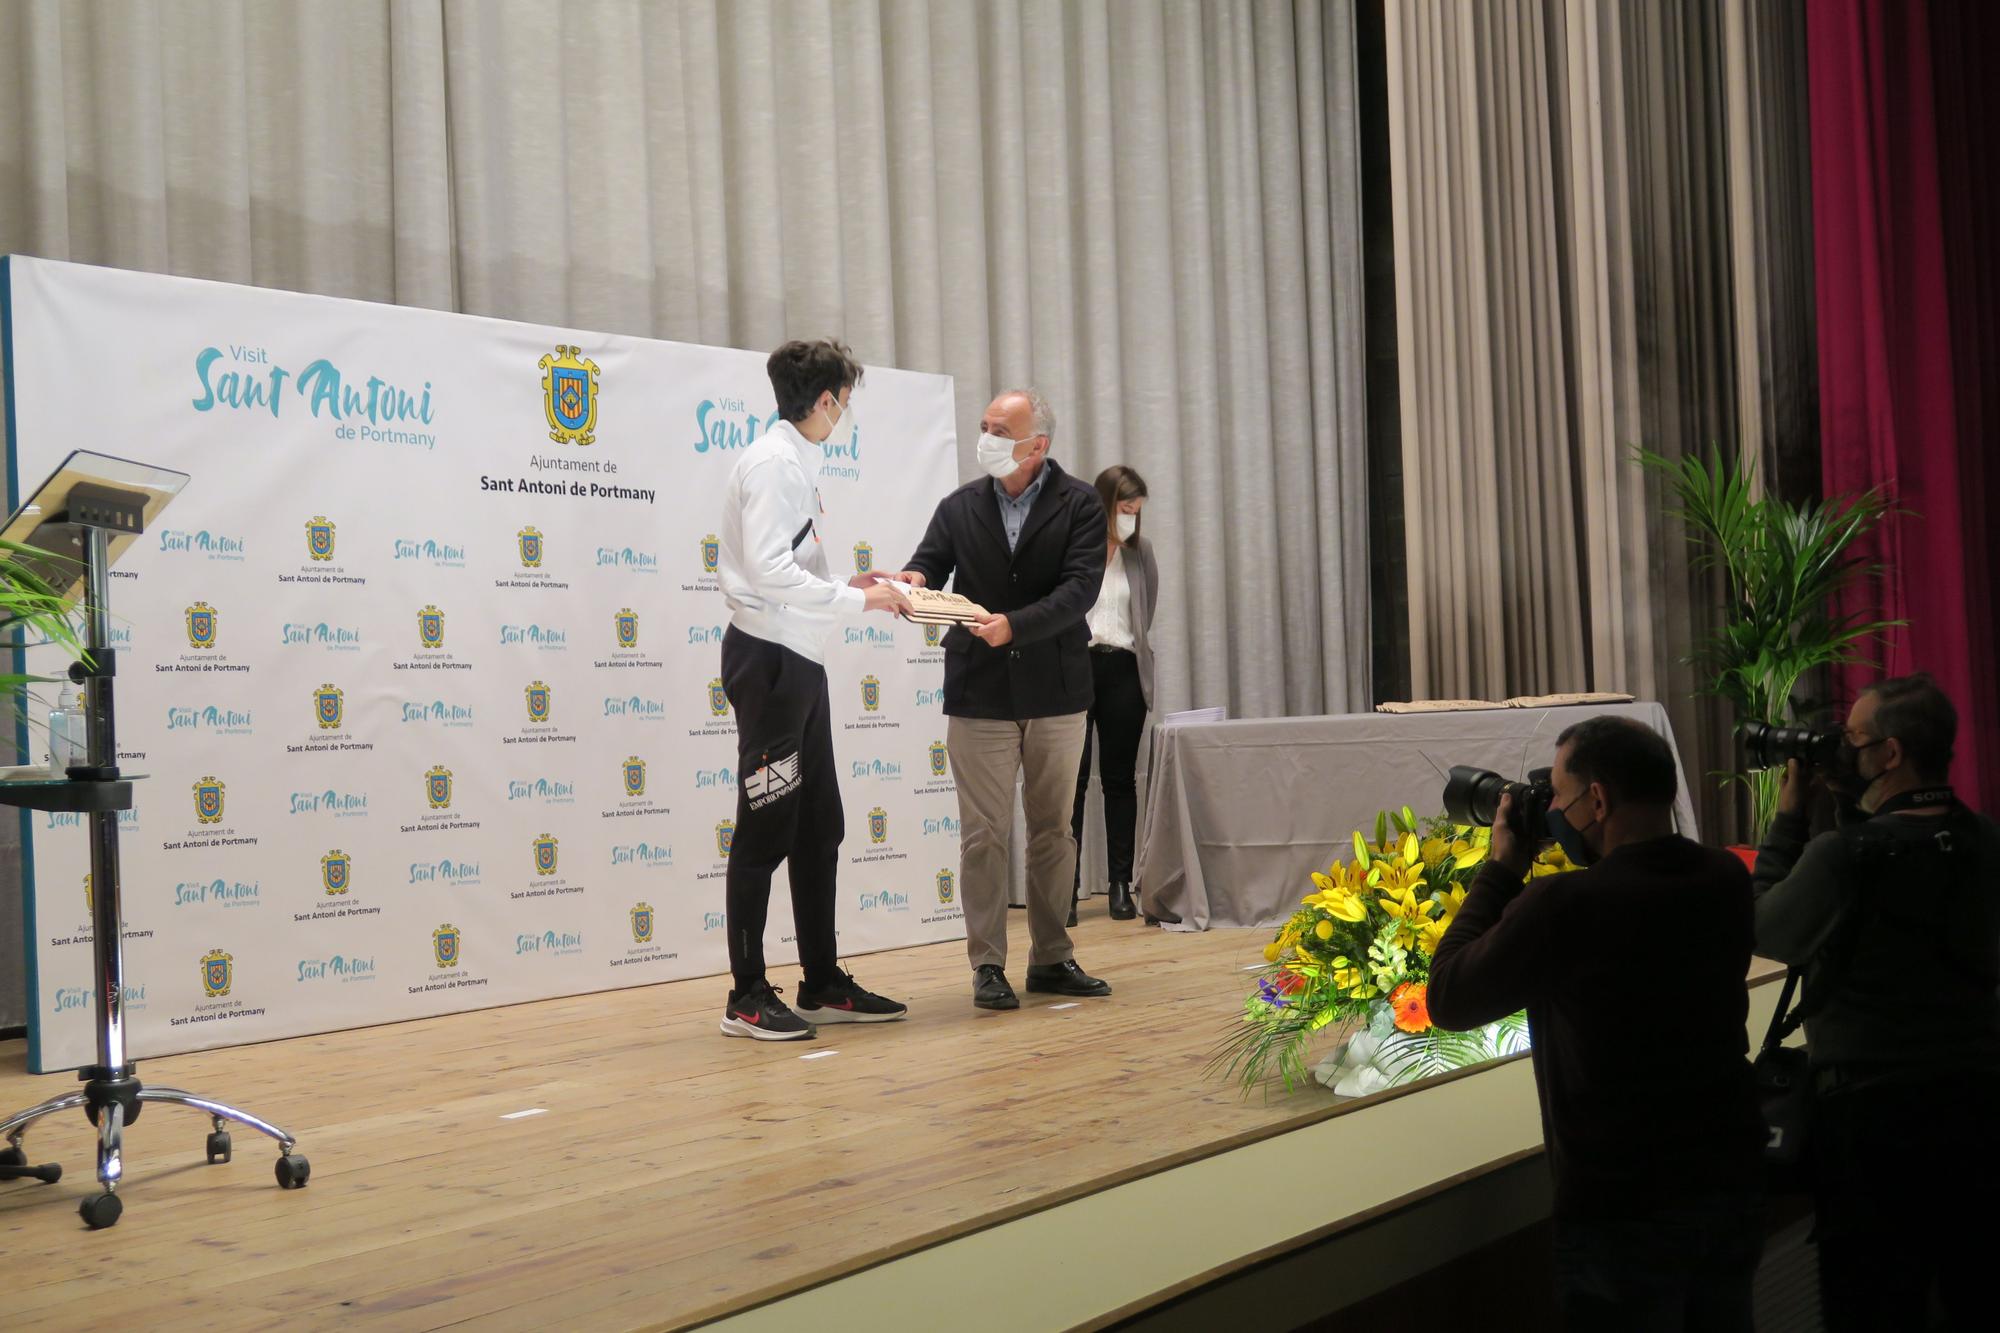 Sant Antoni premia a los mejores deportistas del municipio (2021)